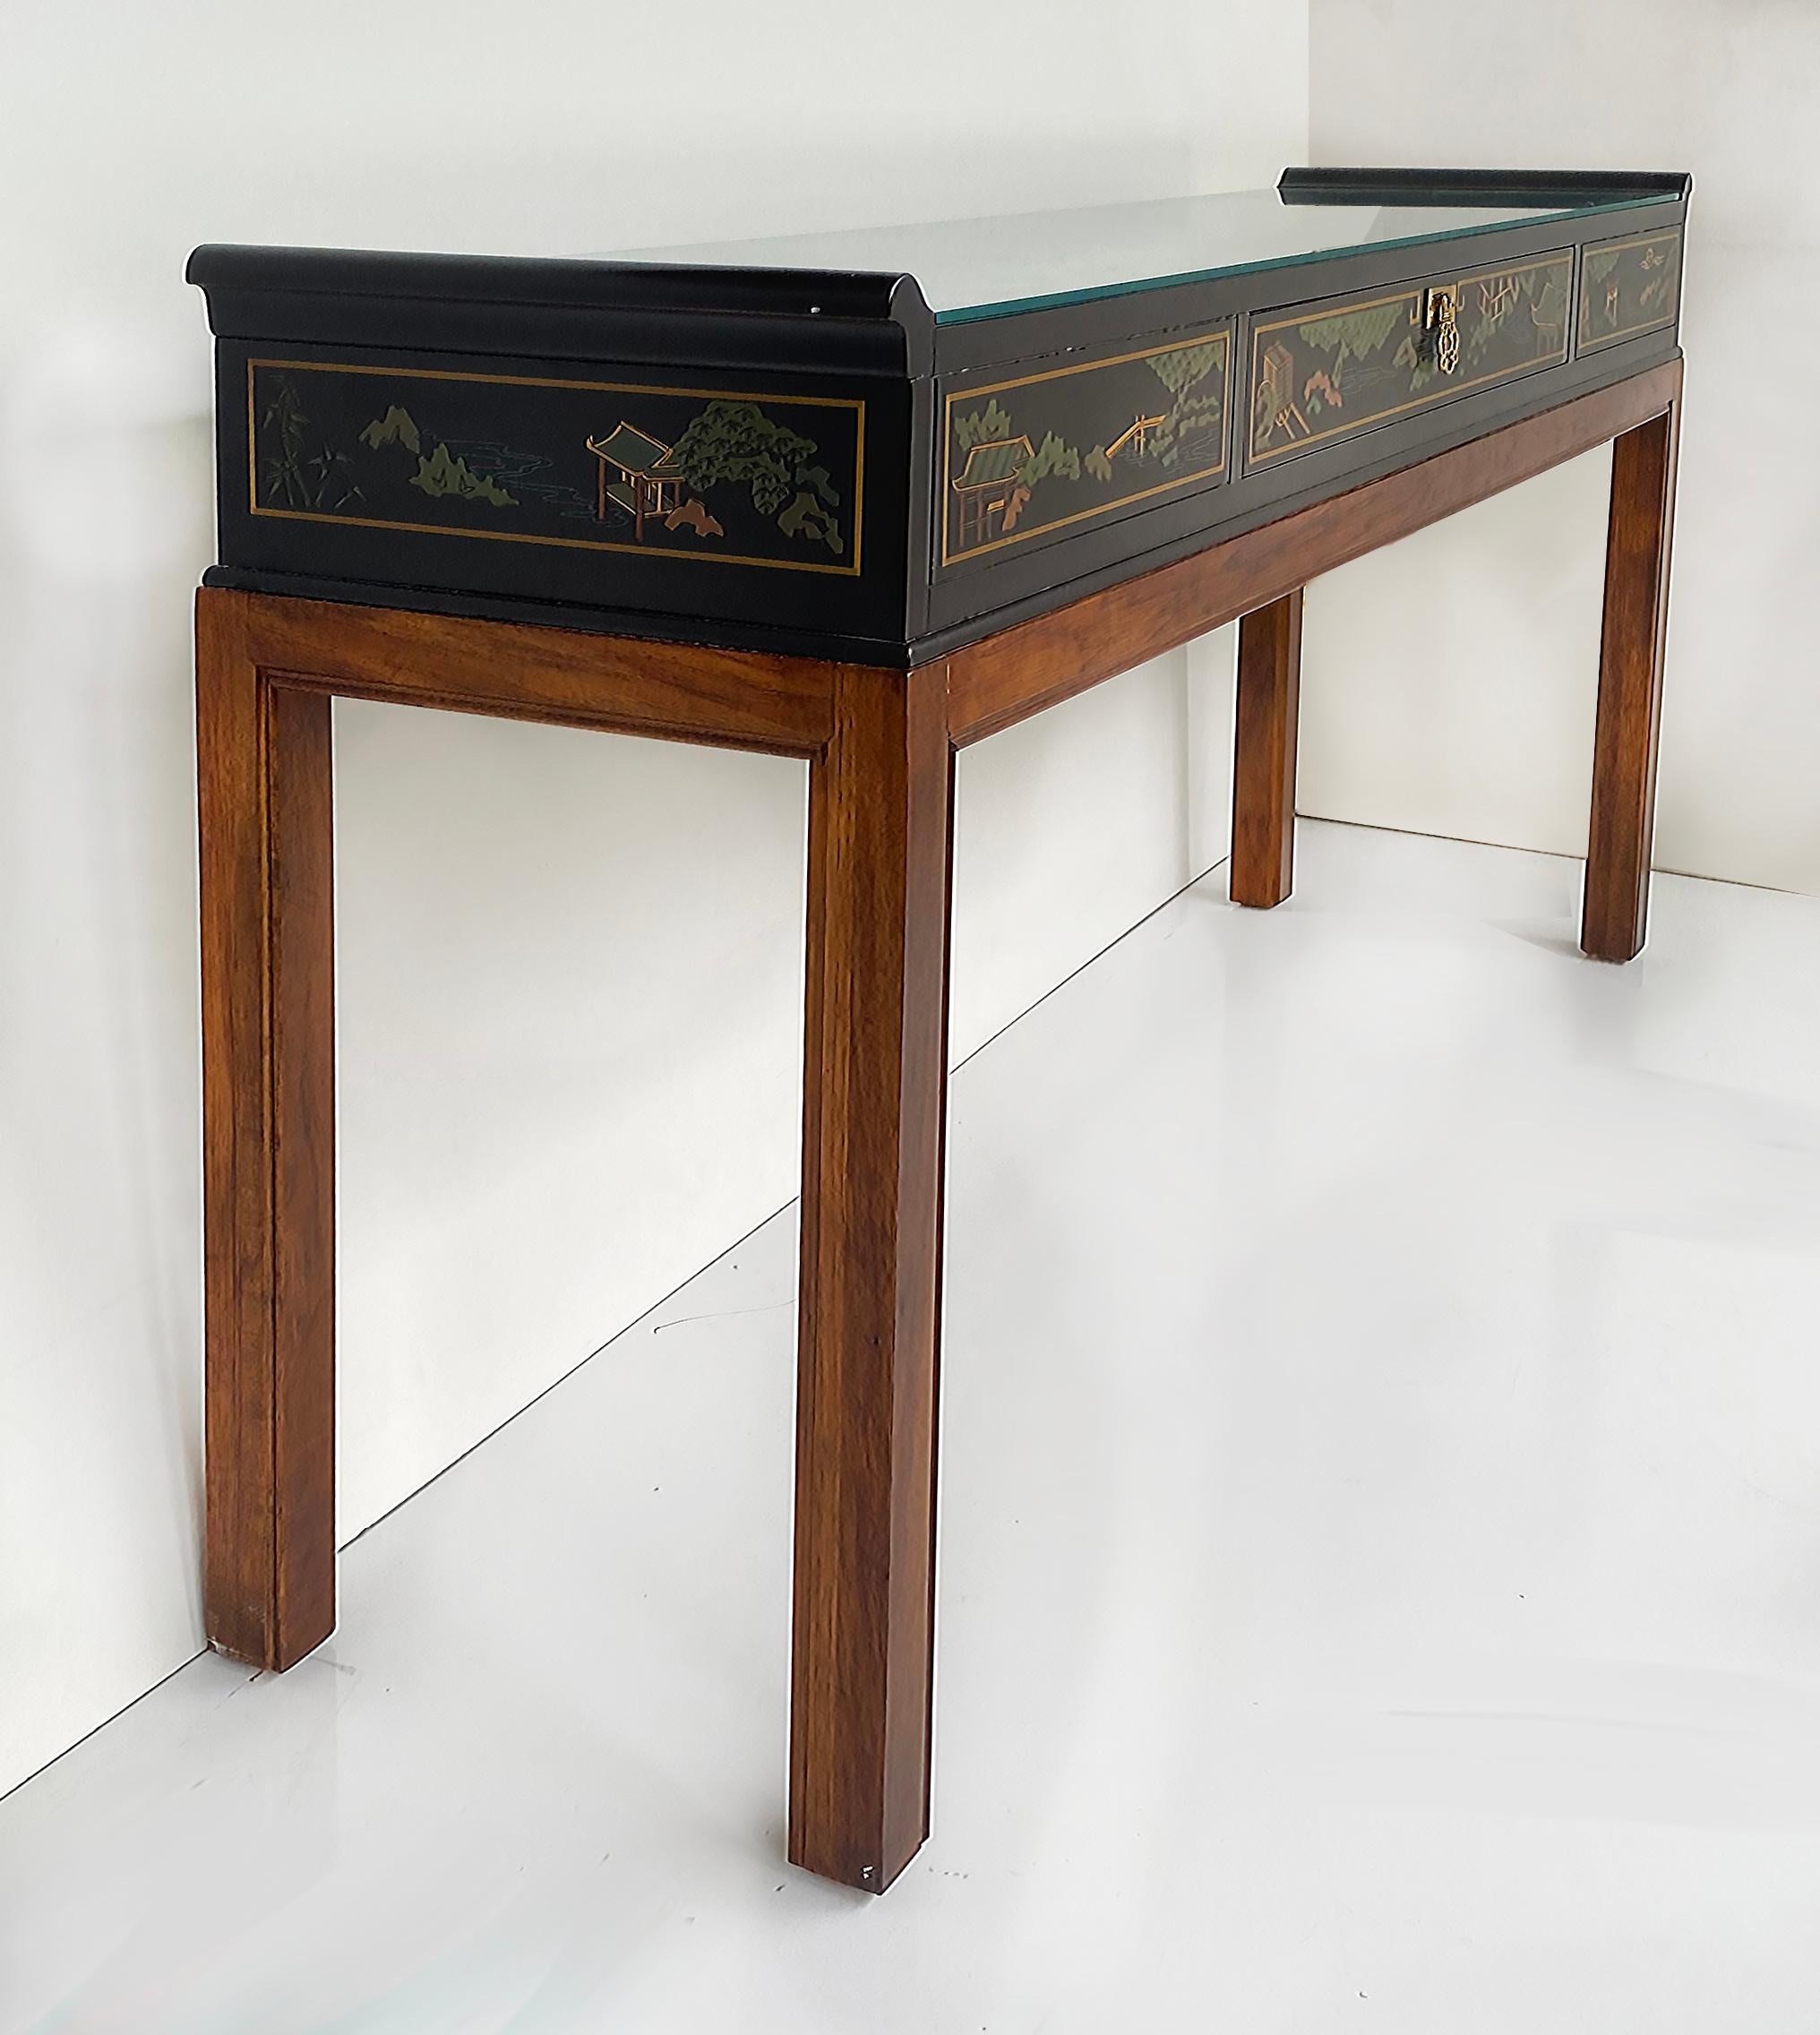 Table console, tiroir et plateau en verre Drexel Heritage Chinoiserie

Nous proposons à la vente une table console Drexel Heritage avec des détails Chinoiserie peints et laqués en noir.  La partie supérieure se présente comme un coffre élancé qui